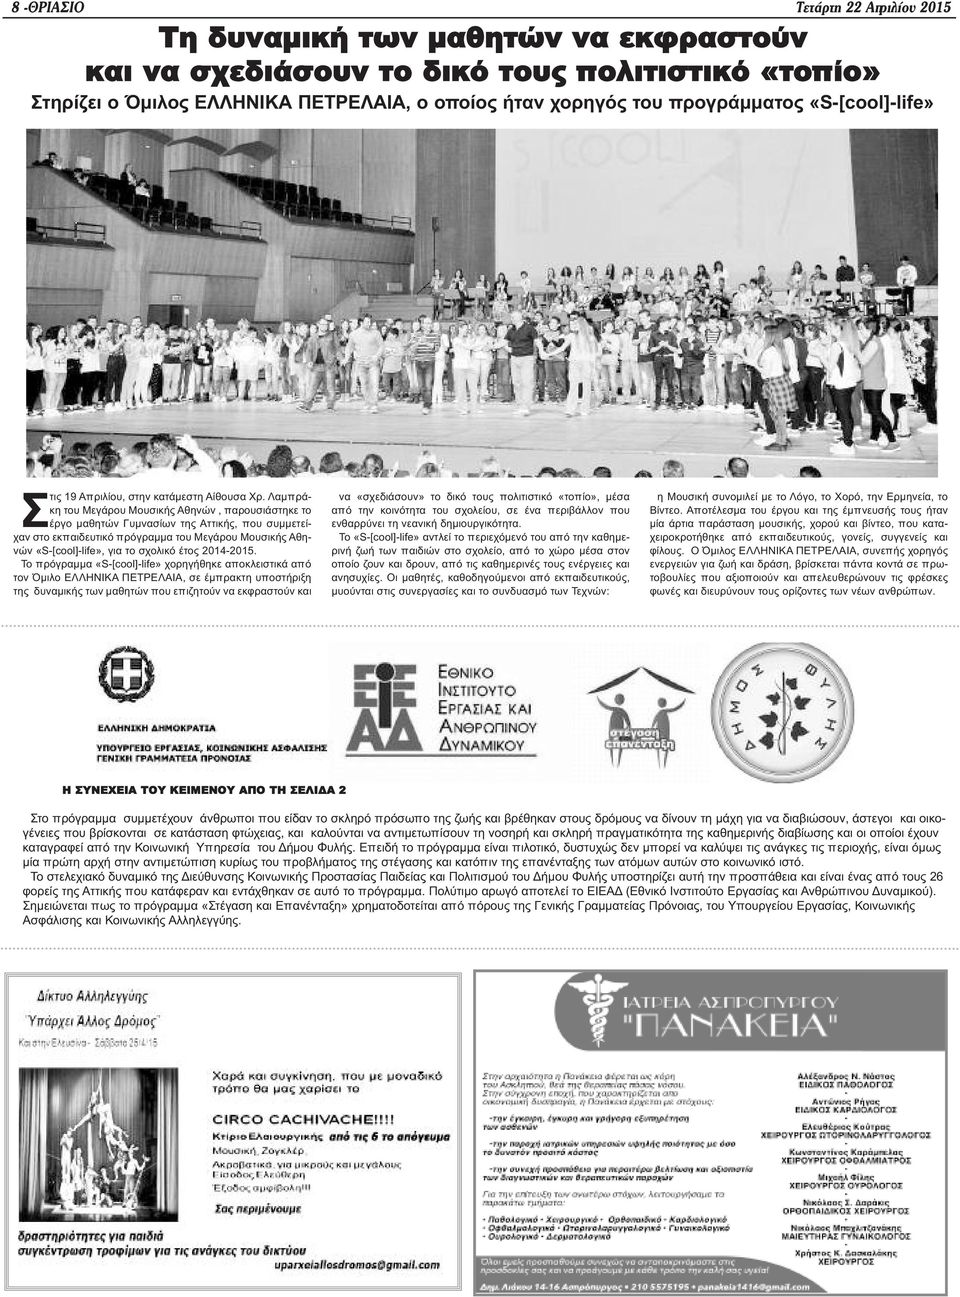 Λαμπράκη του Μεγάρου Μουσικής Αθηνών, παρουσιάστηκε το έργο μαθητών Γυμνασίων της Αττικής, που συμμετείχαν στο εκπαιδευτικό πρόγραμμα του Μεγάρου Μουσικής Αθηνών «S-[cool]-life», για το σχολικό έτος